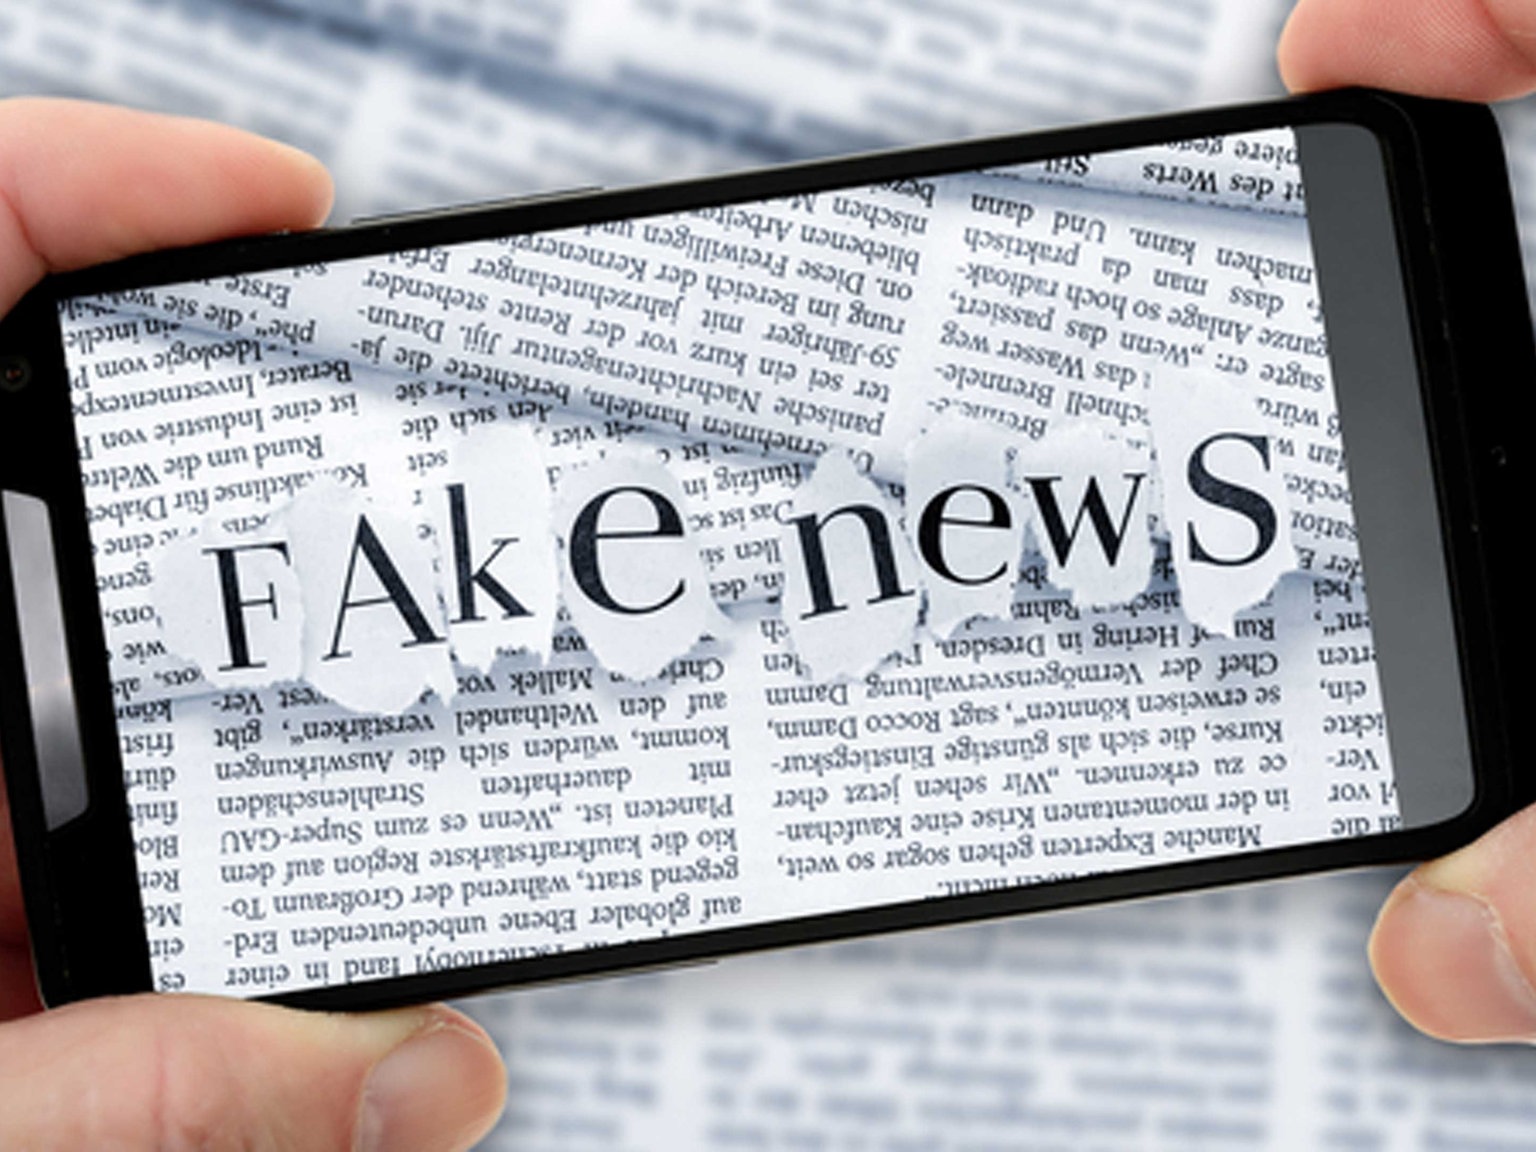 False information or “fake news”?